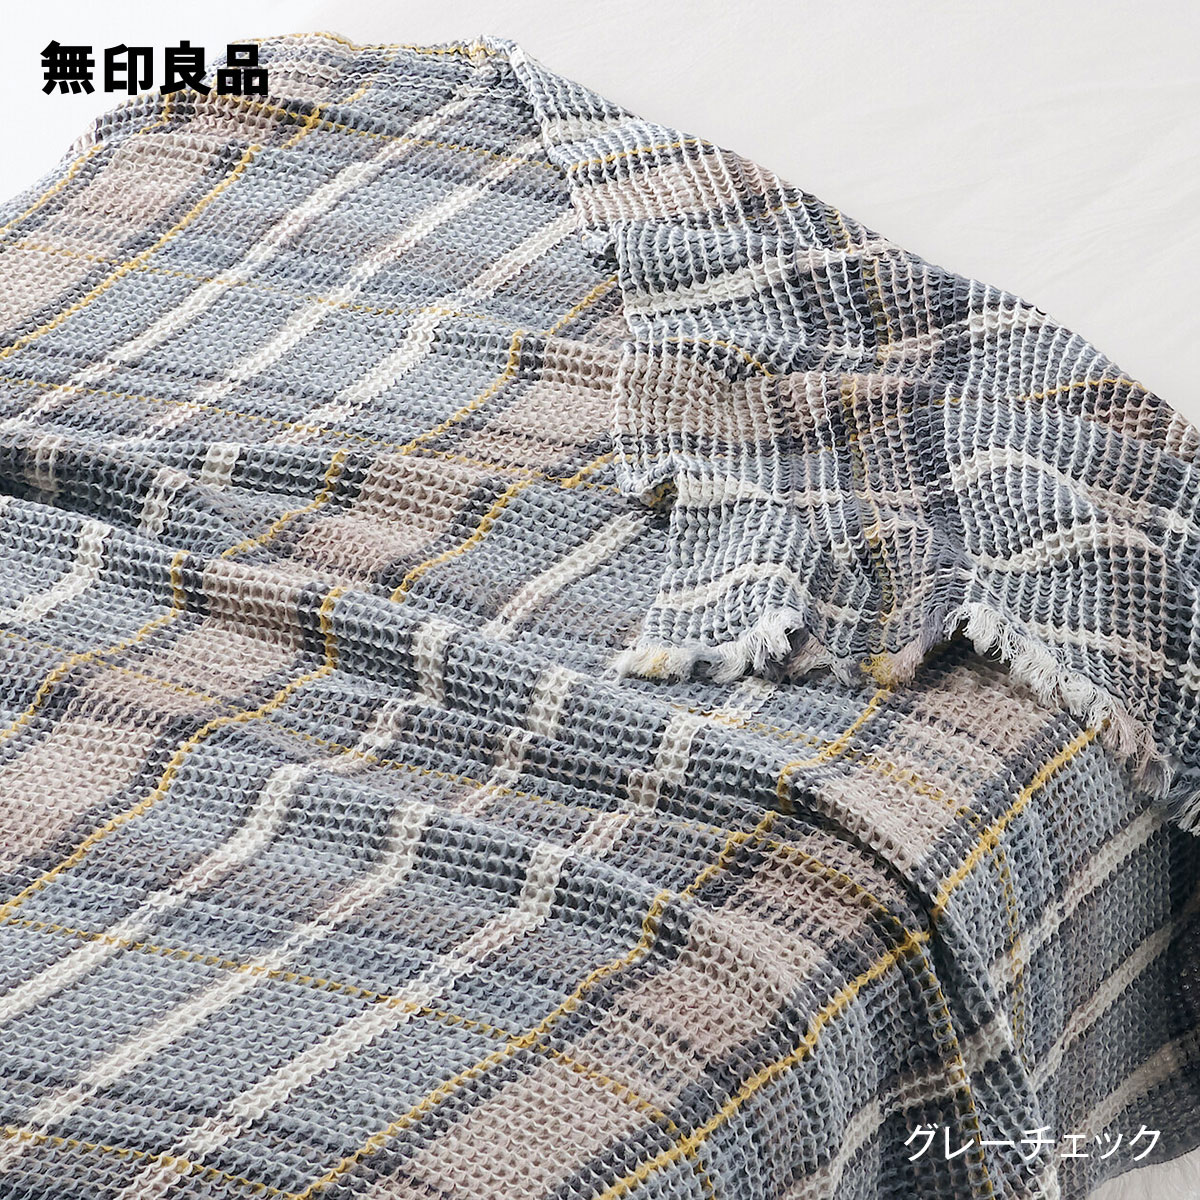 無印良品のマドラスチェック ワッフル織ケット・140×200cm(布団・寝具)